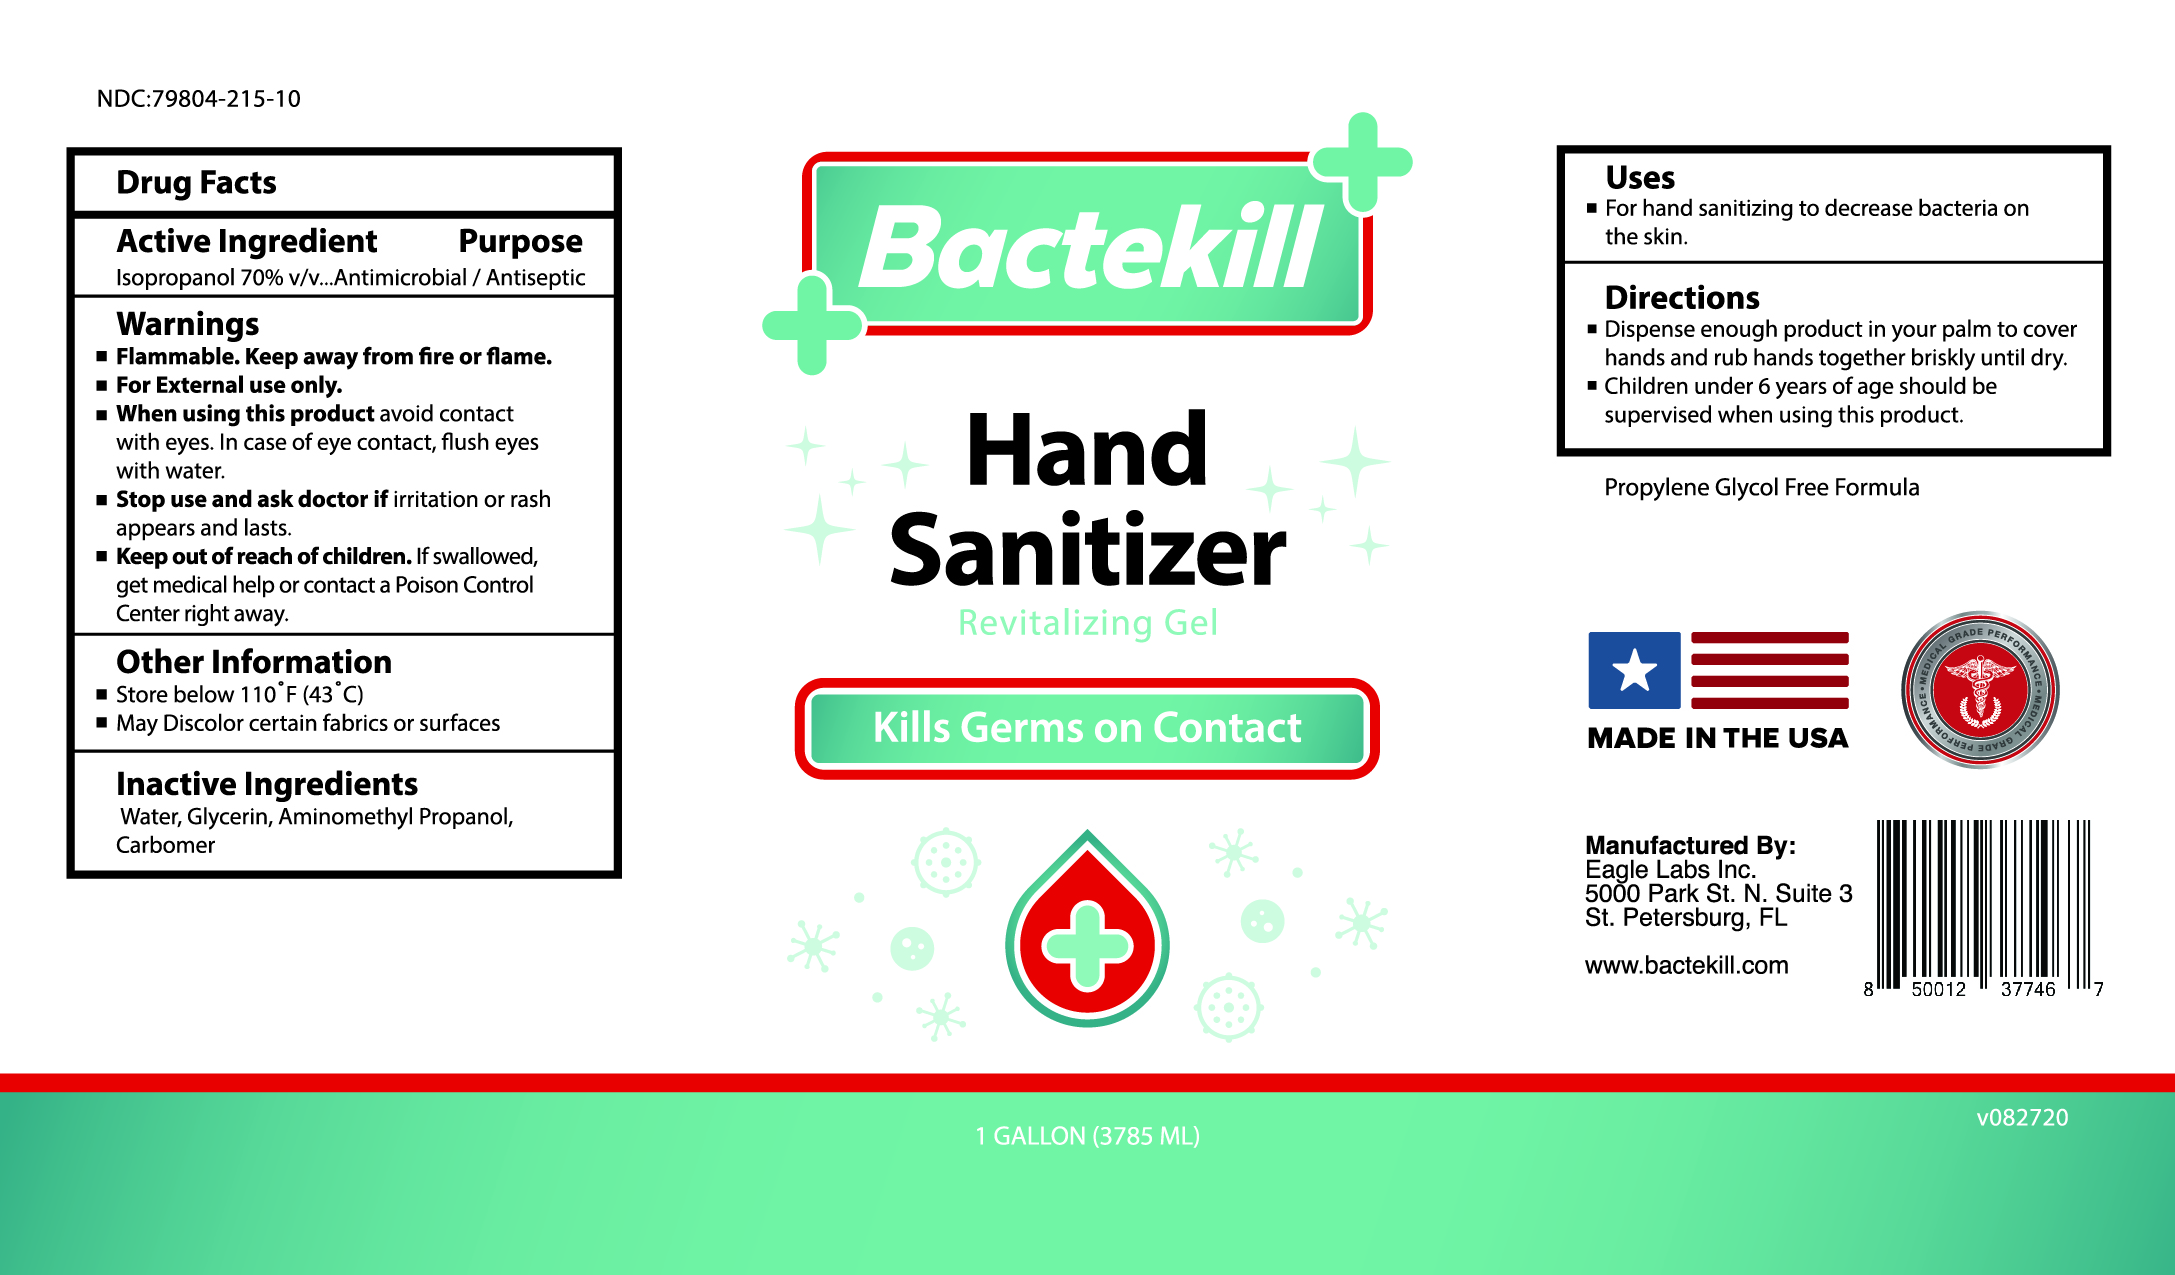 Bactekill Hand Sanitizer